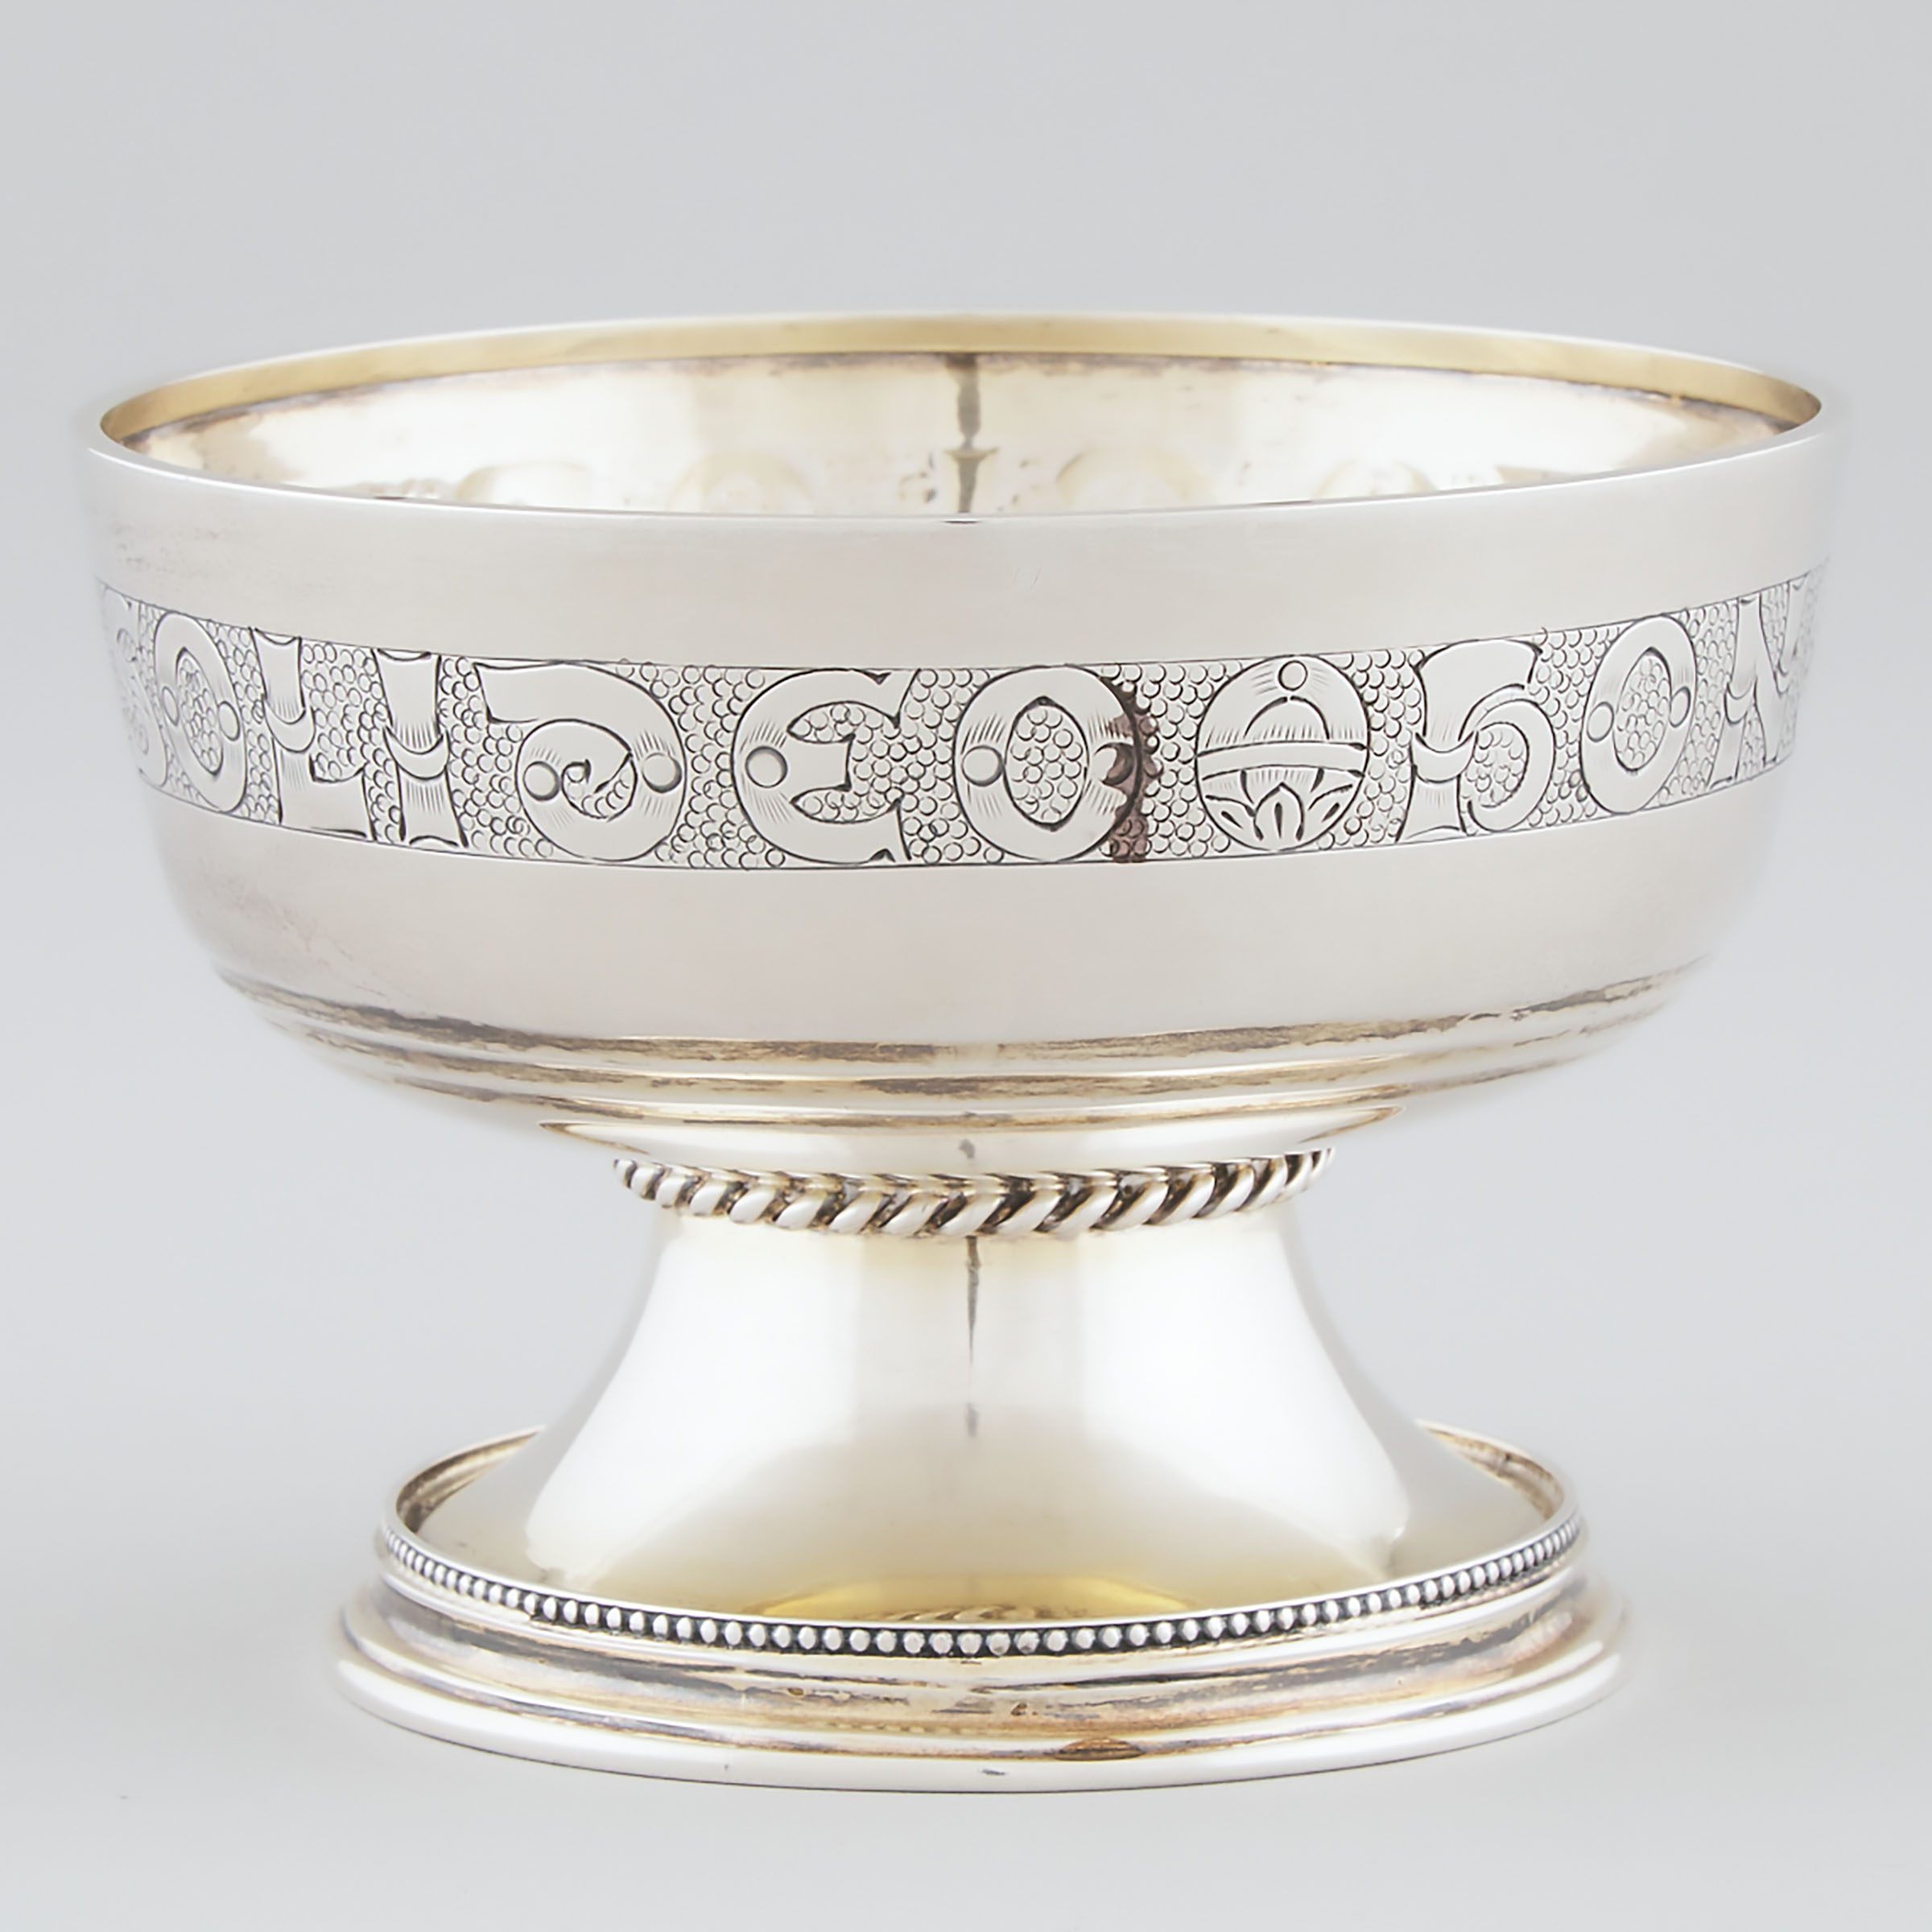 English Silver 'Campion Cup', S. Blanckensee & Son, Birmingham, 1935